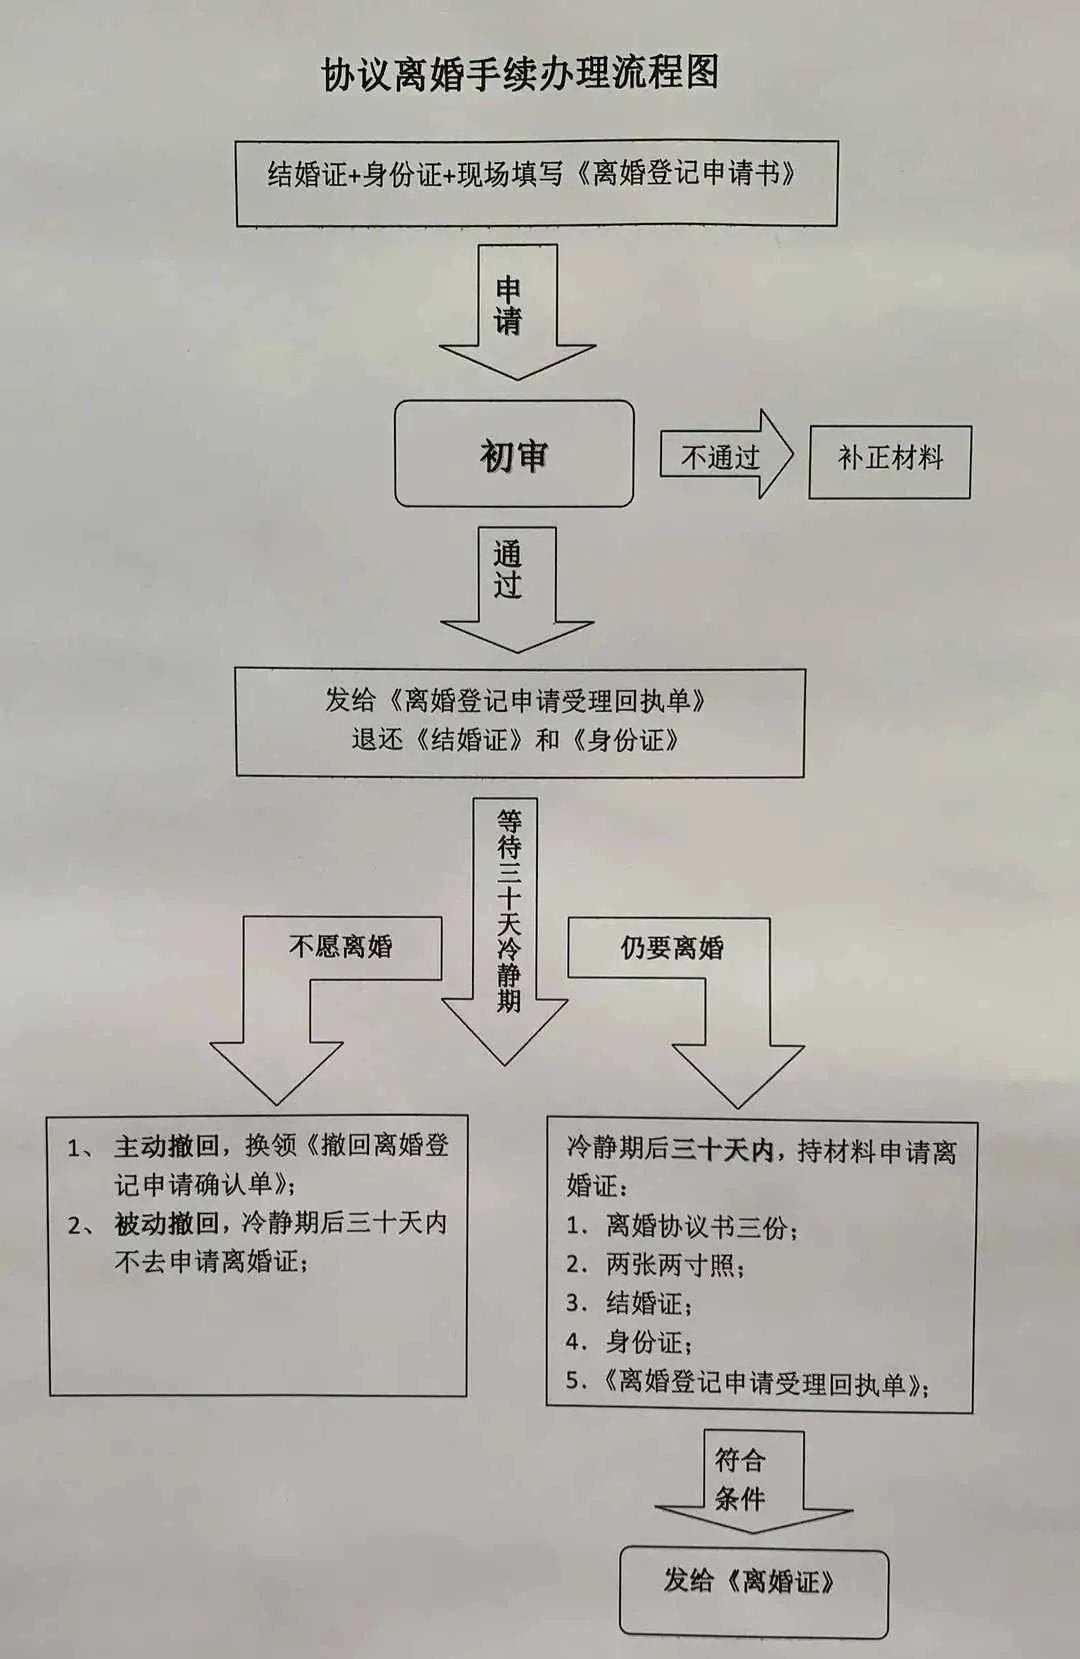 (离婚在哪里都能离婚吗)广东民生:在深圳离婚的手续在哪里办理?手续费是多少钱?  第4张